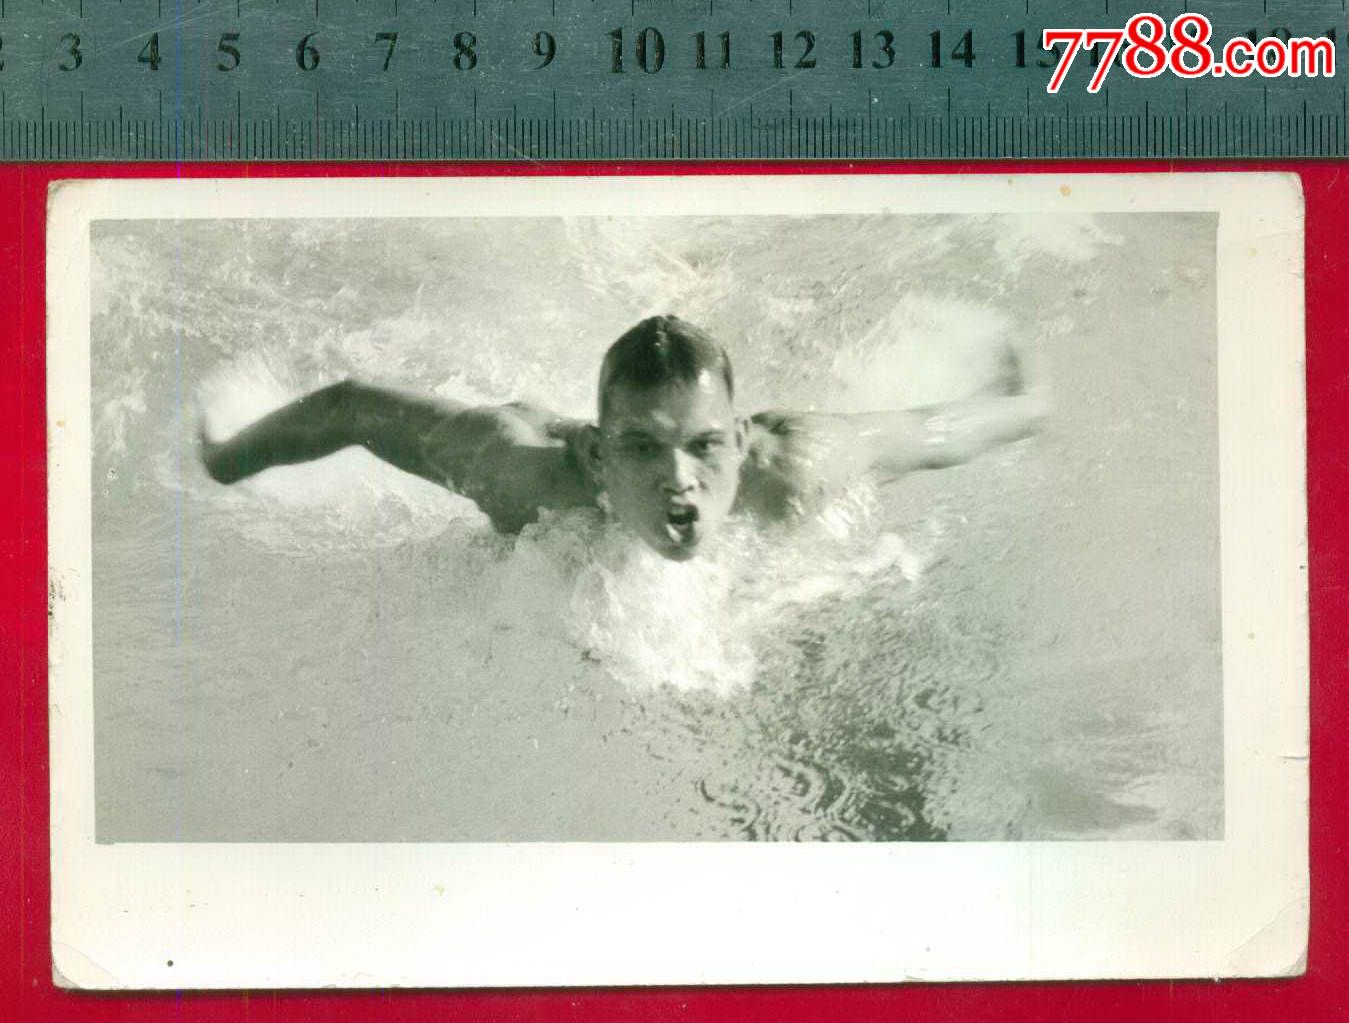 1975年,罗兆应获男子400米混合泳冠军,老照片